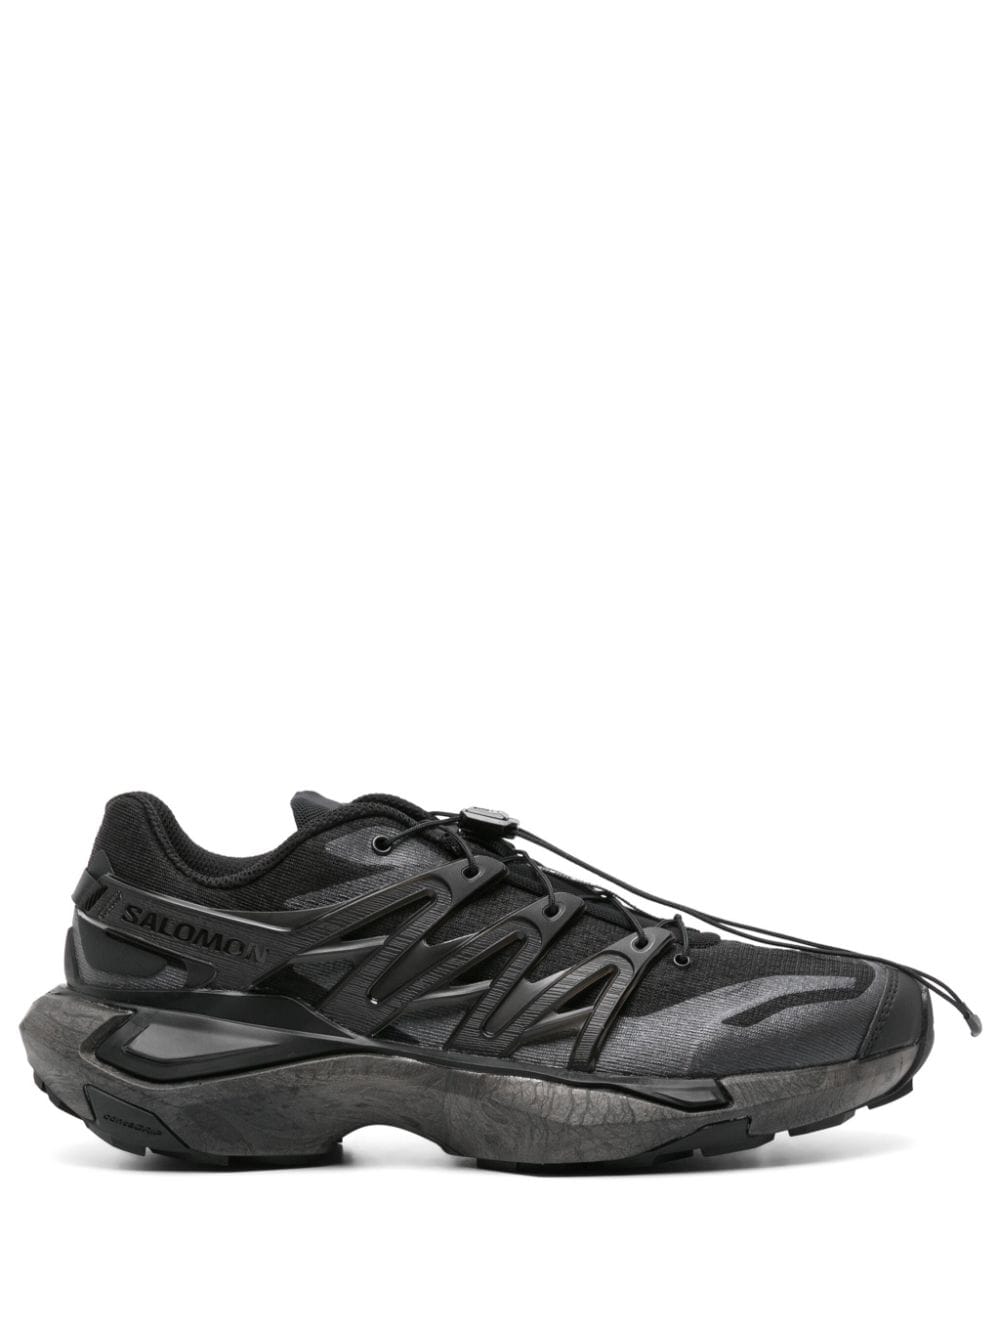 Salomon XT PU.RE Advanced sneakers - Black